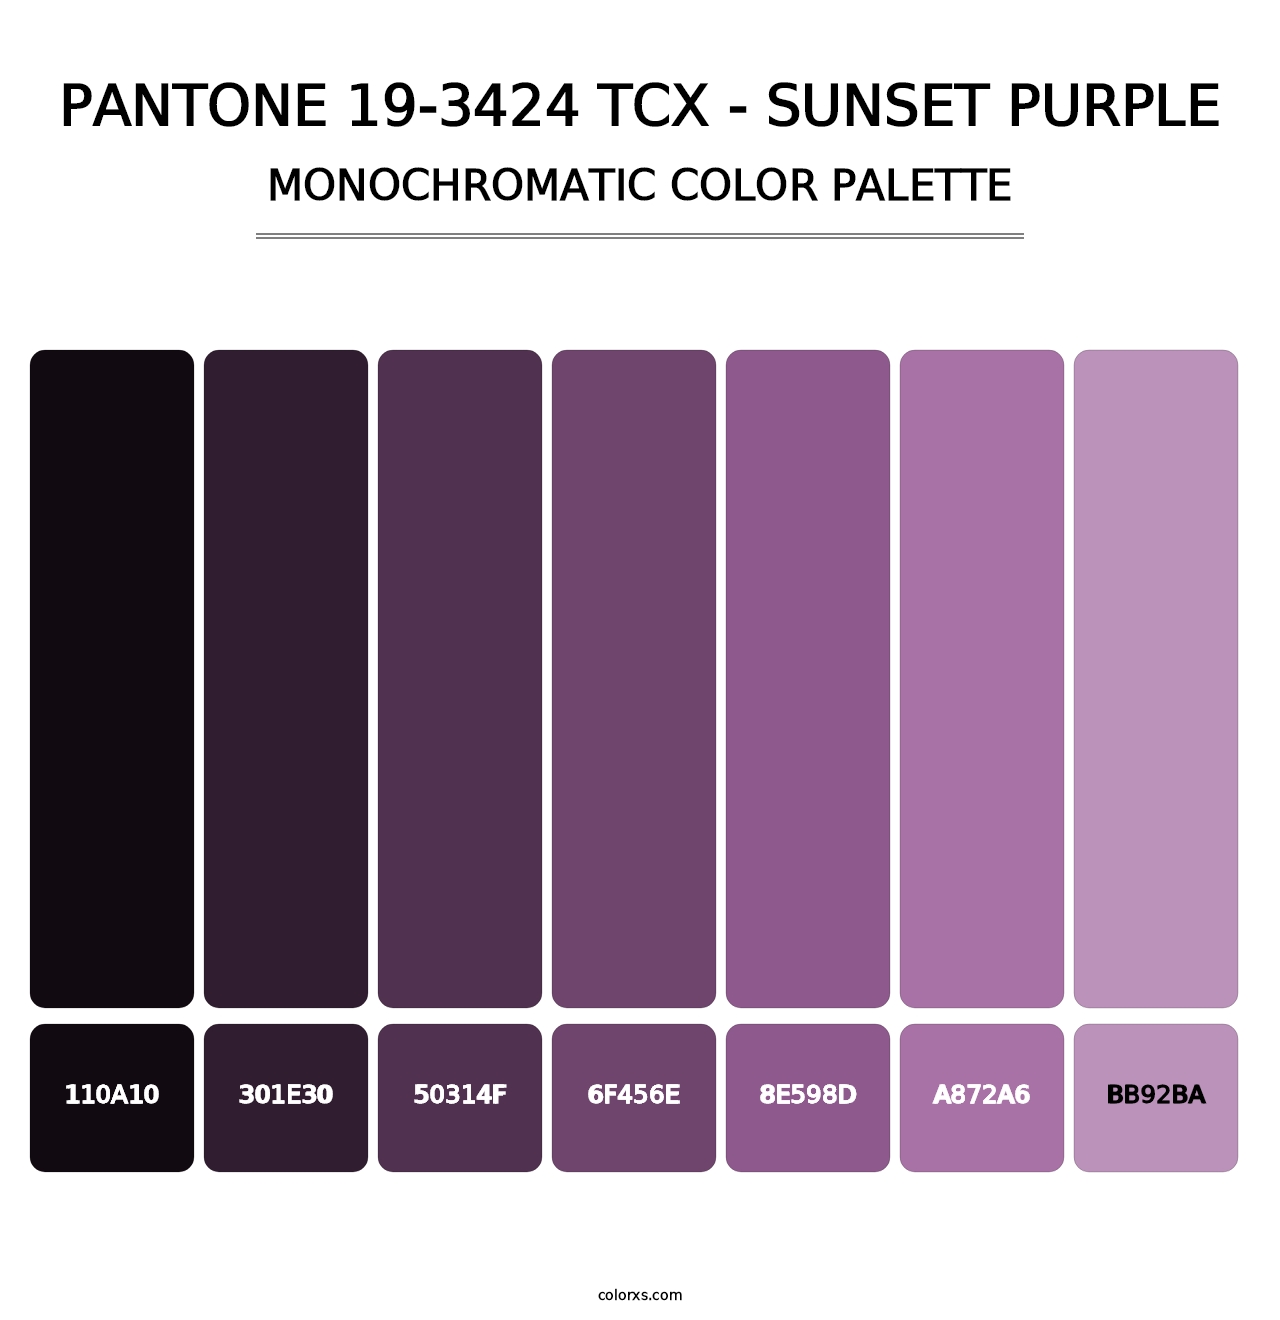 PANTONE 19-3424 TCX - Sunset Purple - Monochromatic Color Palette